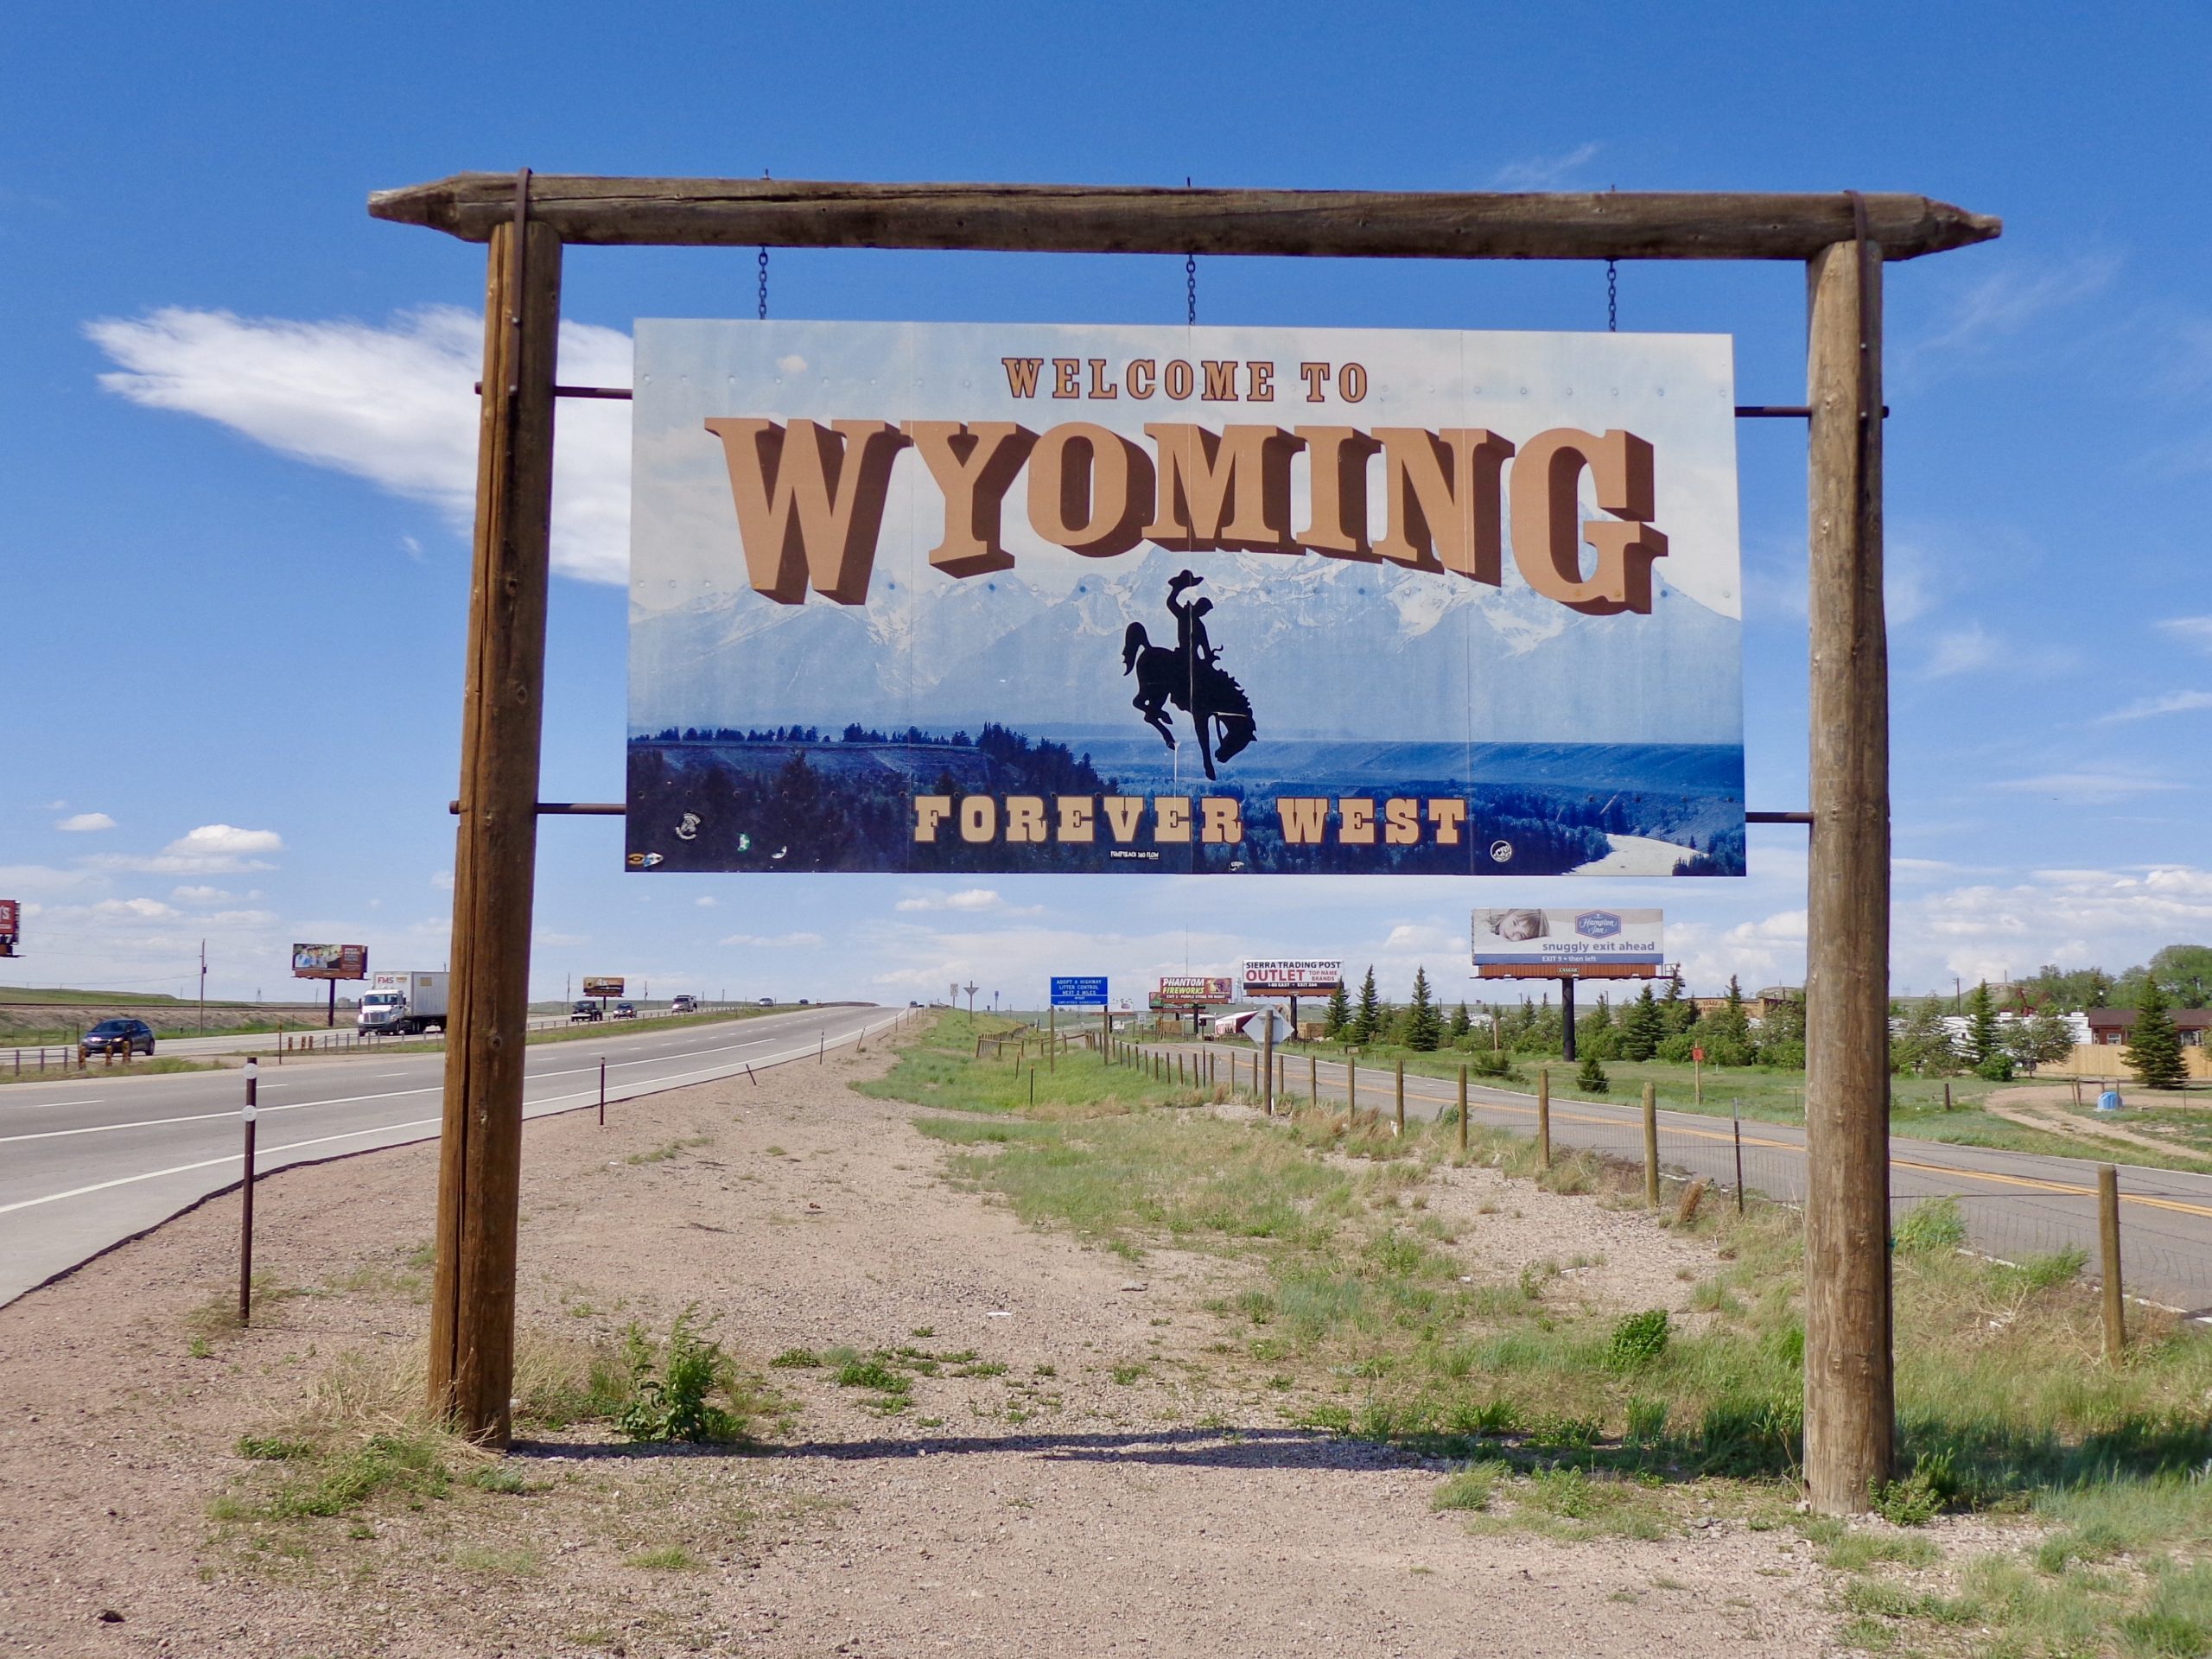 Por siempre oeste de Wyoming